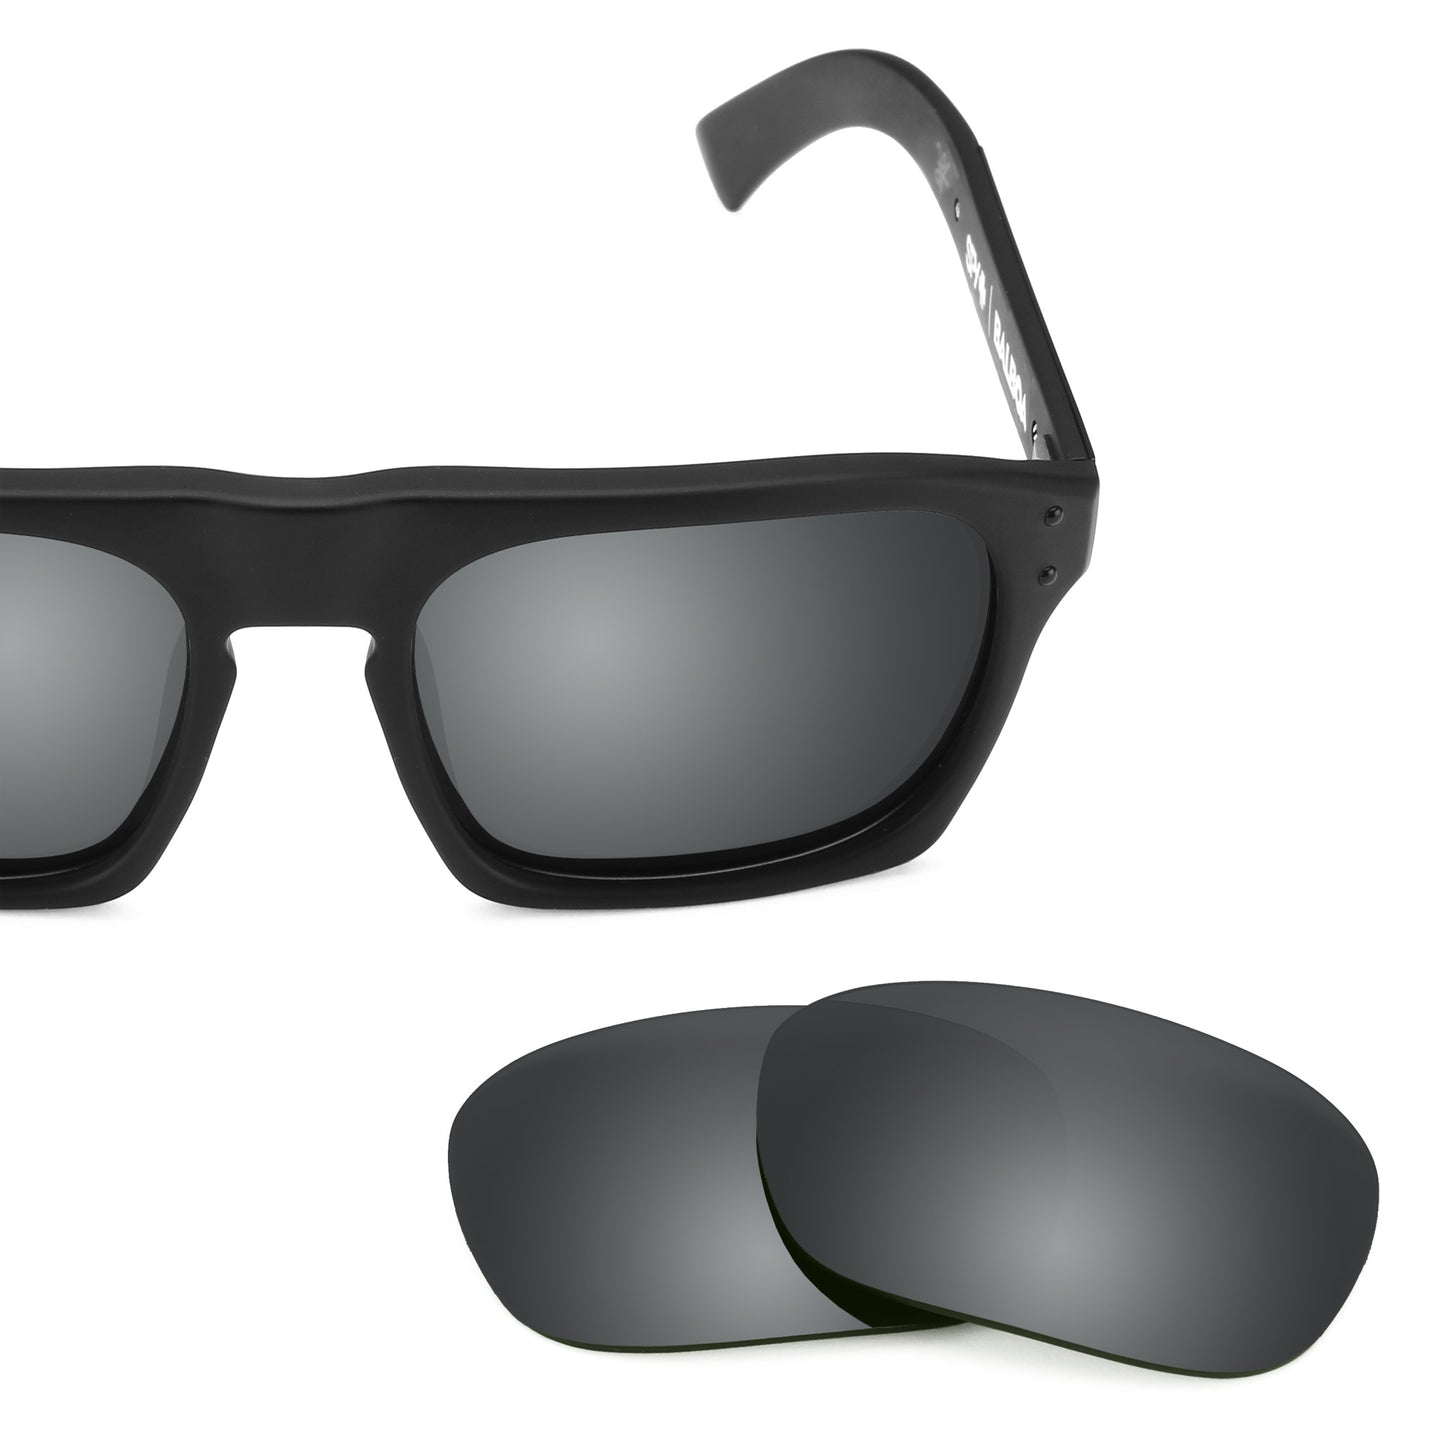 Revant replacement lenses for Spy Optic Balboa Non-Polarized Black Chrome